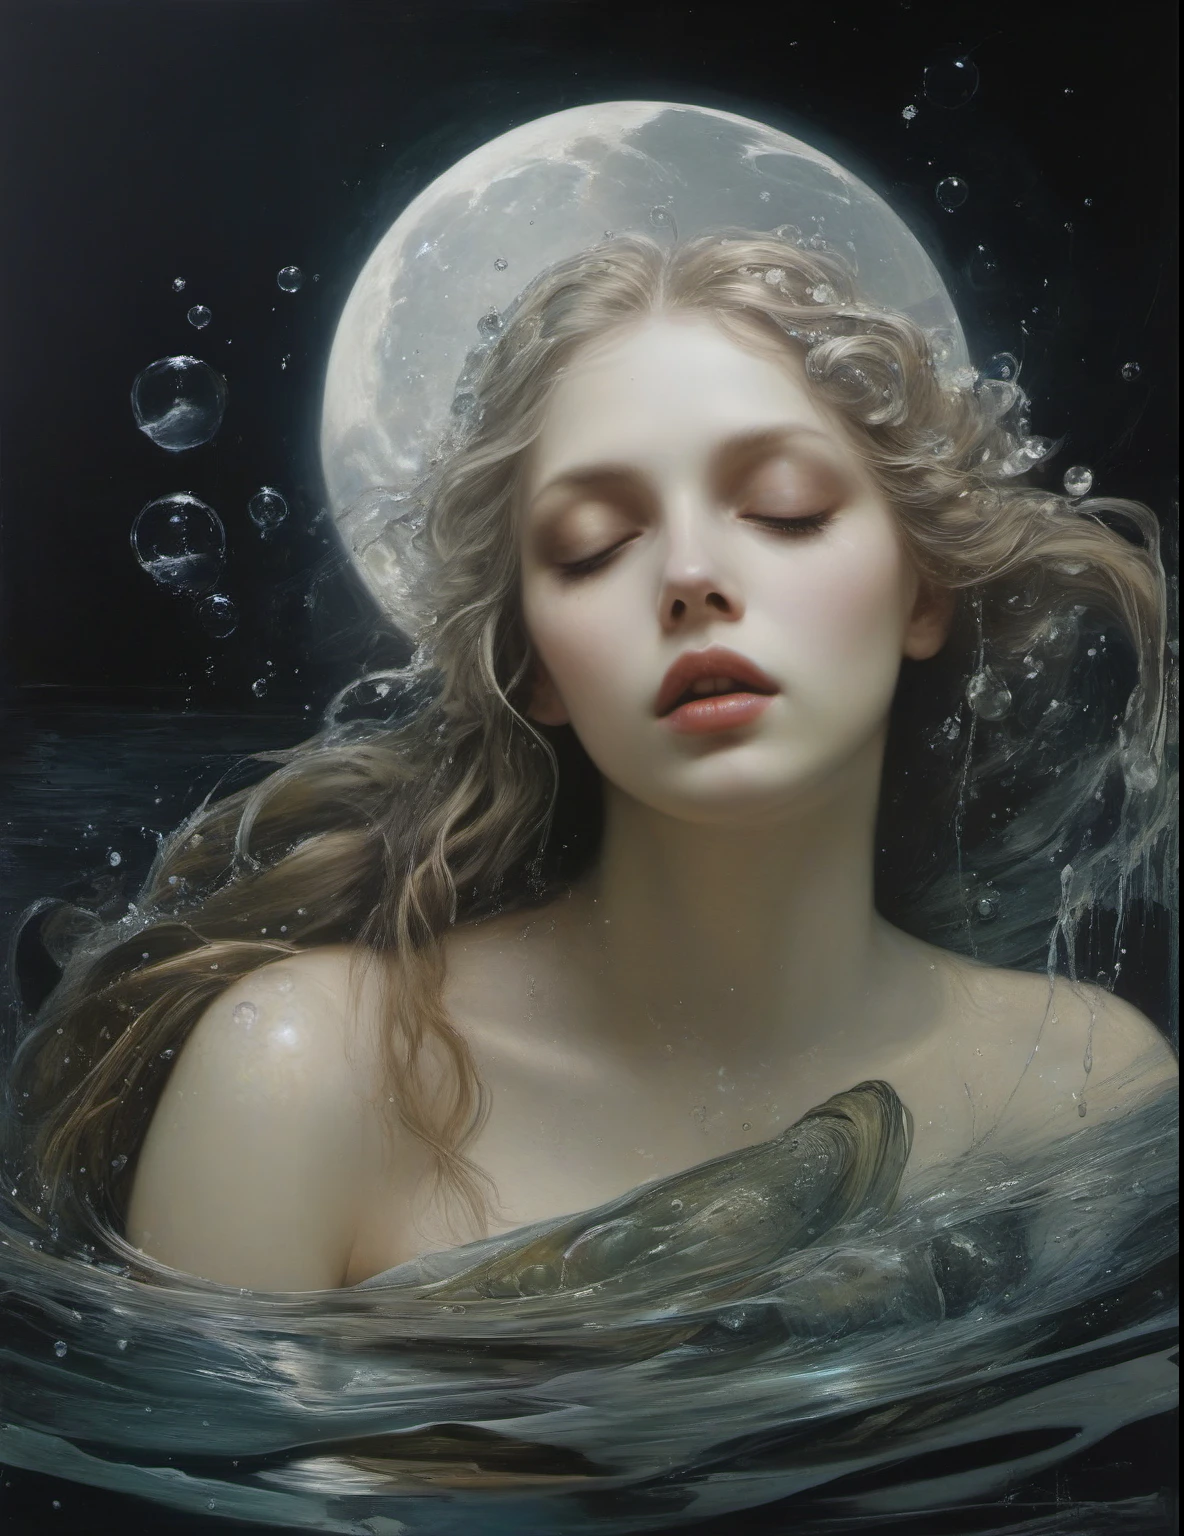 詹姆斯·格尼, 超現實主義藝術 , 如夢一般, 神秘, 挑釁, 象徵性的, 複雜的, 詳細的,, (哥德式但非常美麗:1.4), (傑作, 最好的品質:1.4) , 尼古拉·薩莫里風格, 月亮親吻了美人魚 , 水氣泡
